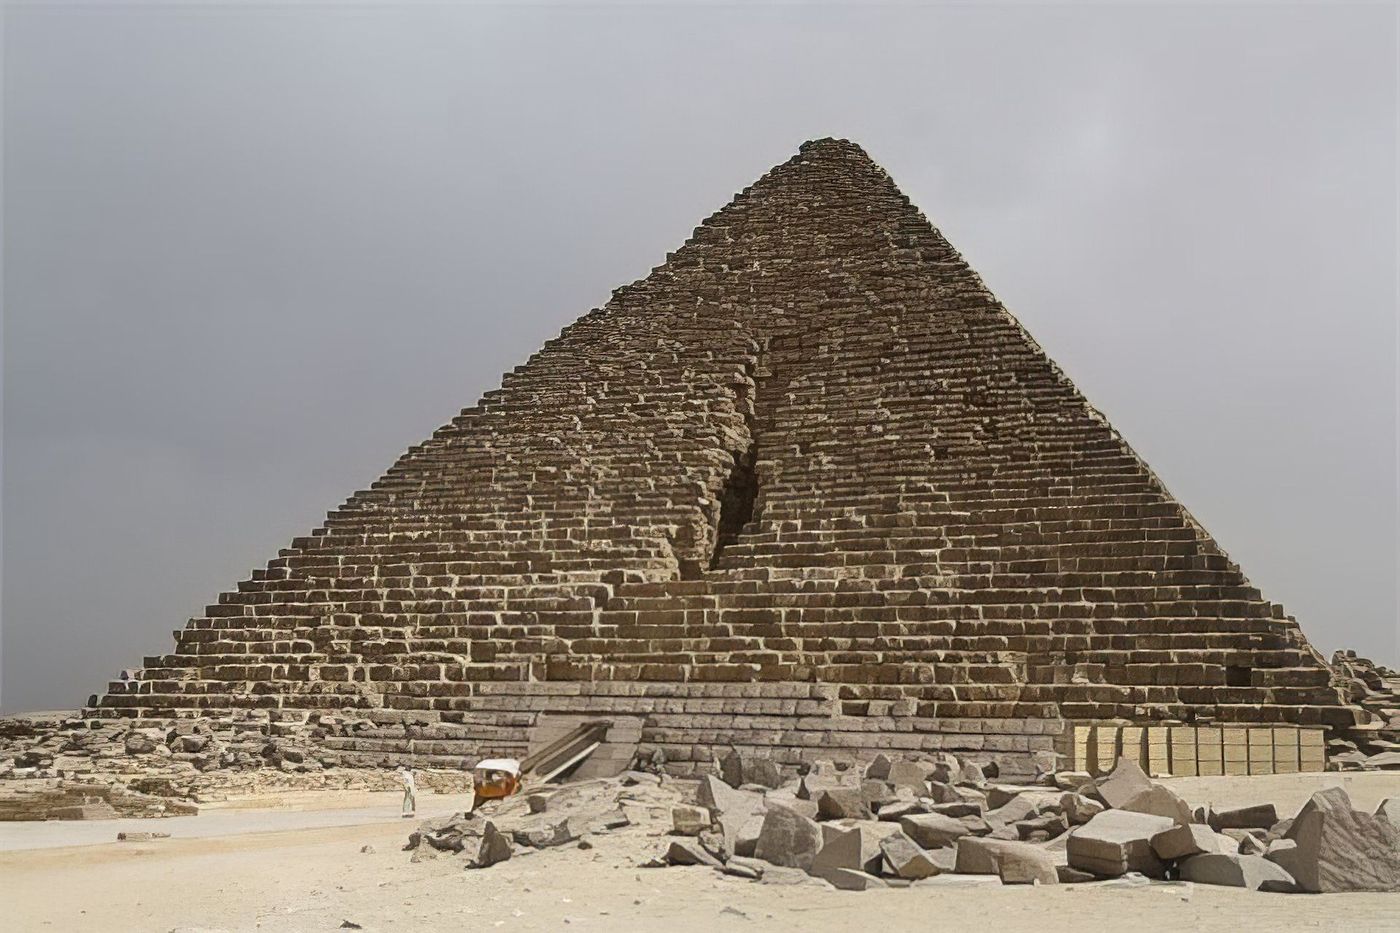 Pyramide de Mykérinos